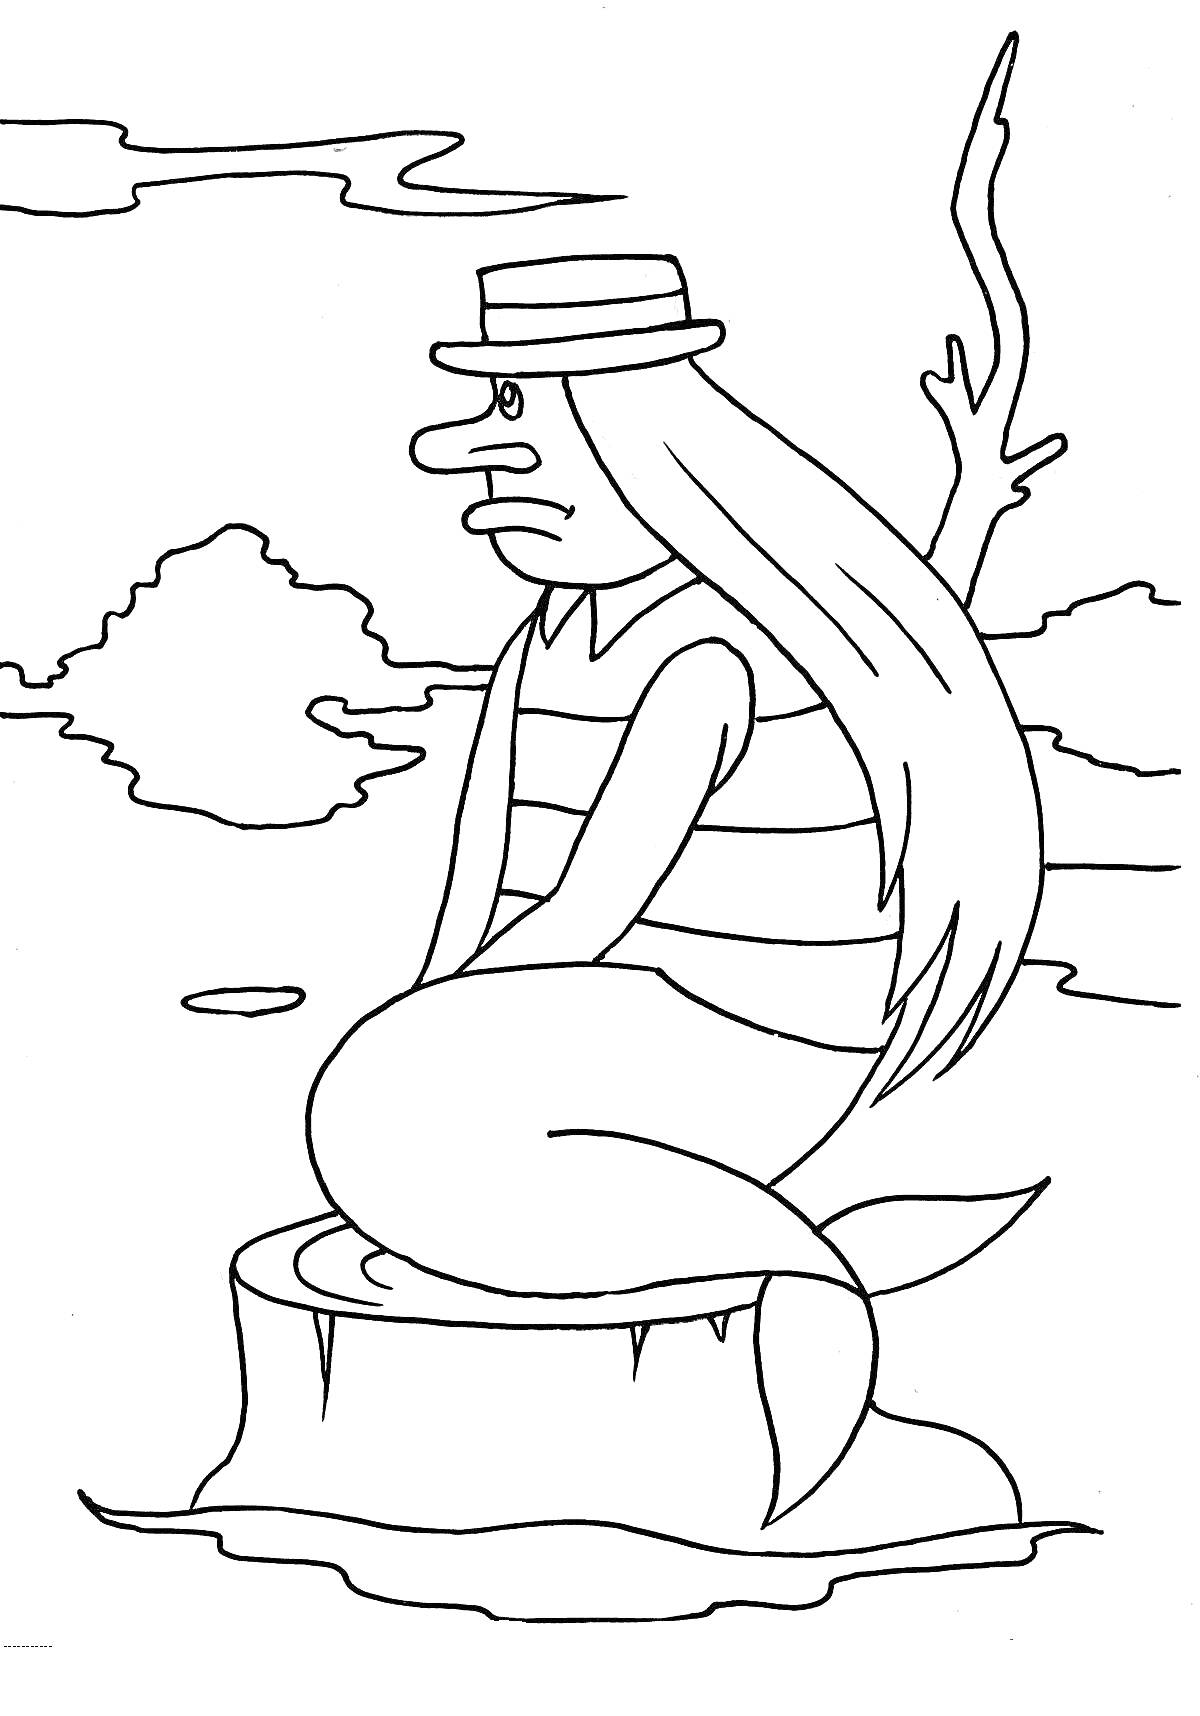 Русалка в шляпе, сидящая на пне на фоне природы